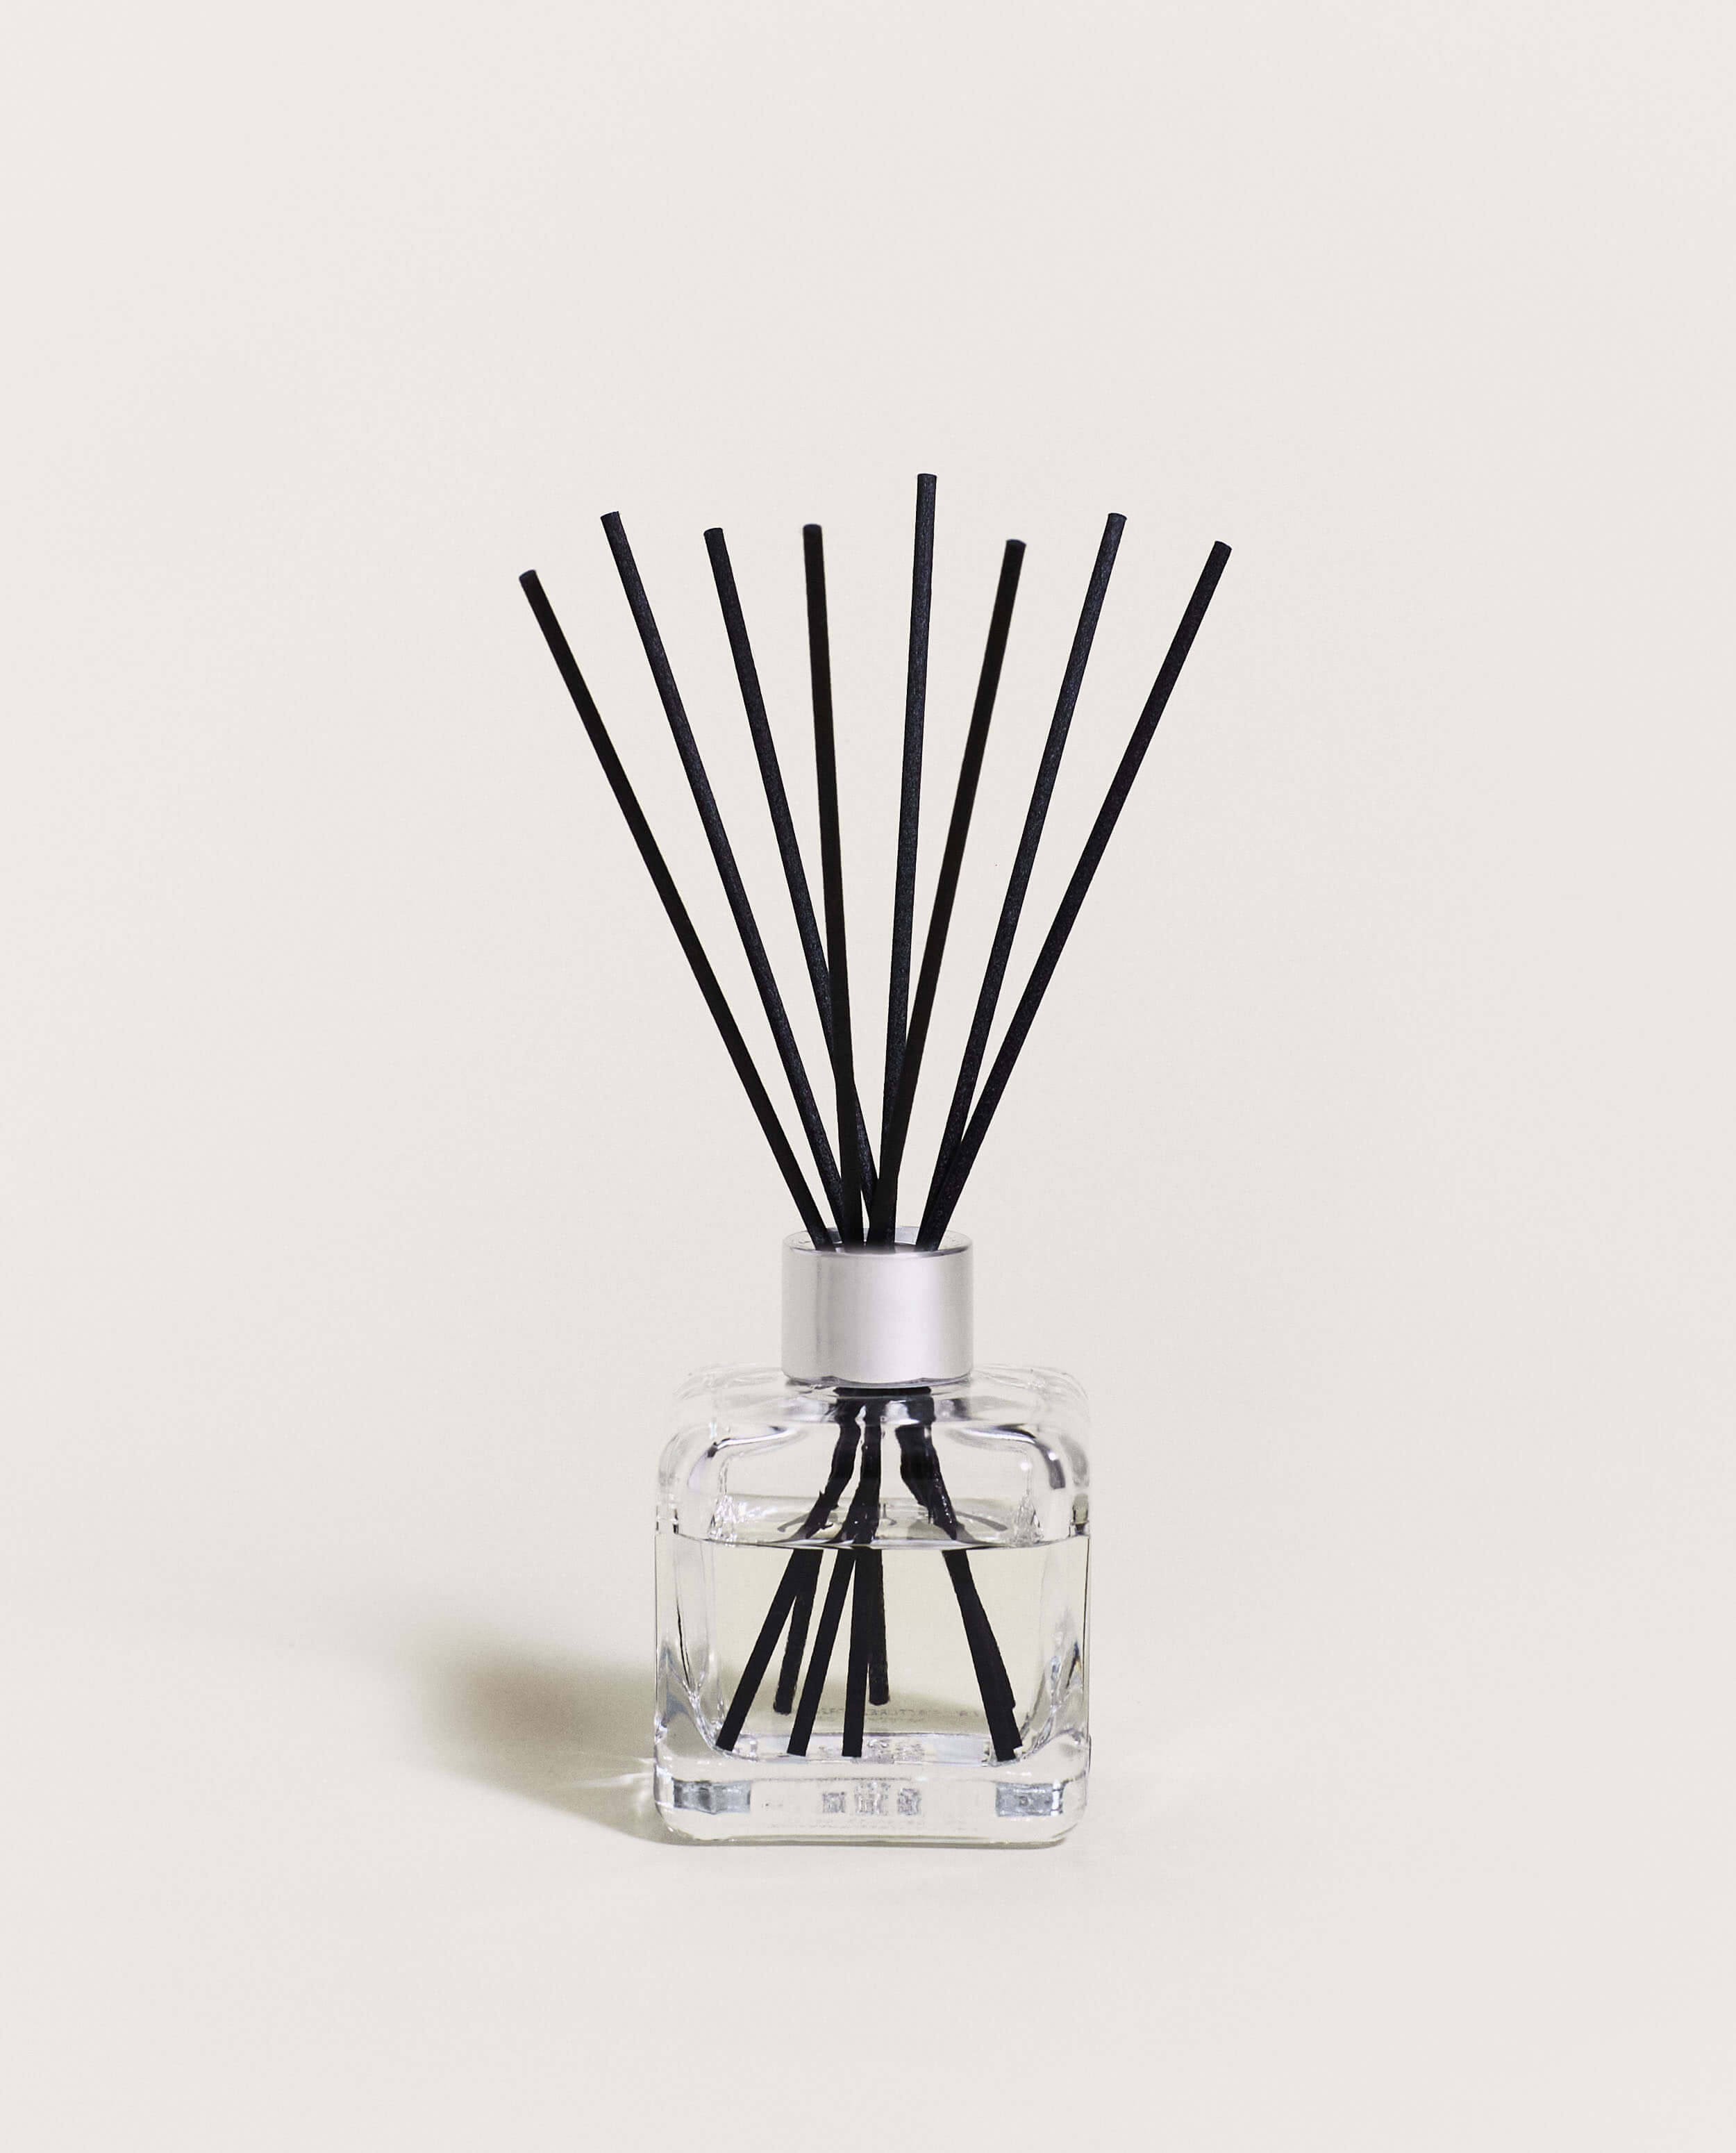 Stoelzle Masnières Parfumerie produces Maison Berger Paris' latest lamp,  Joy - Premium Beauty News